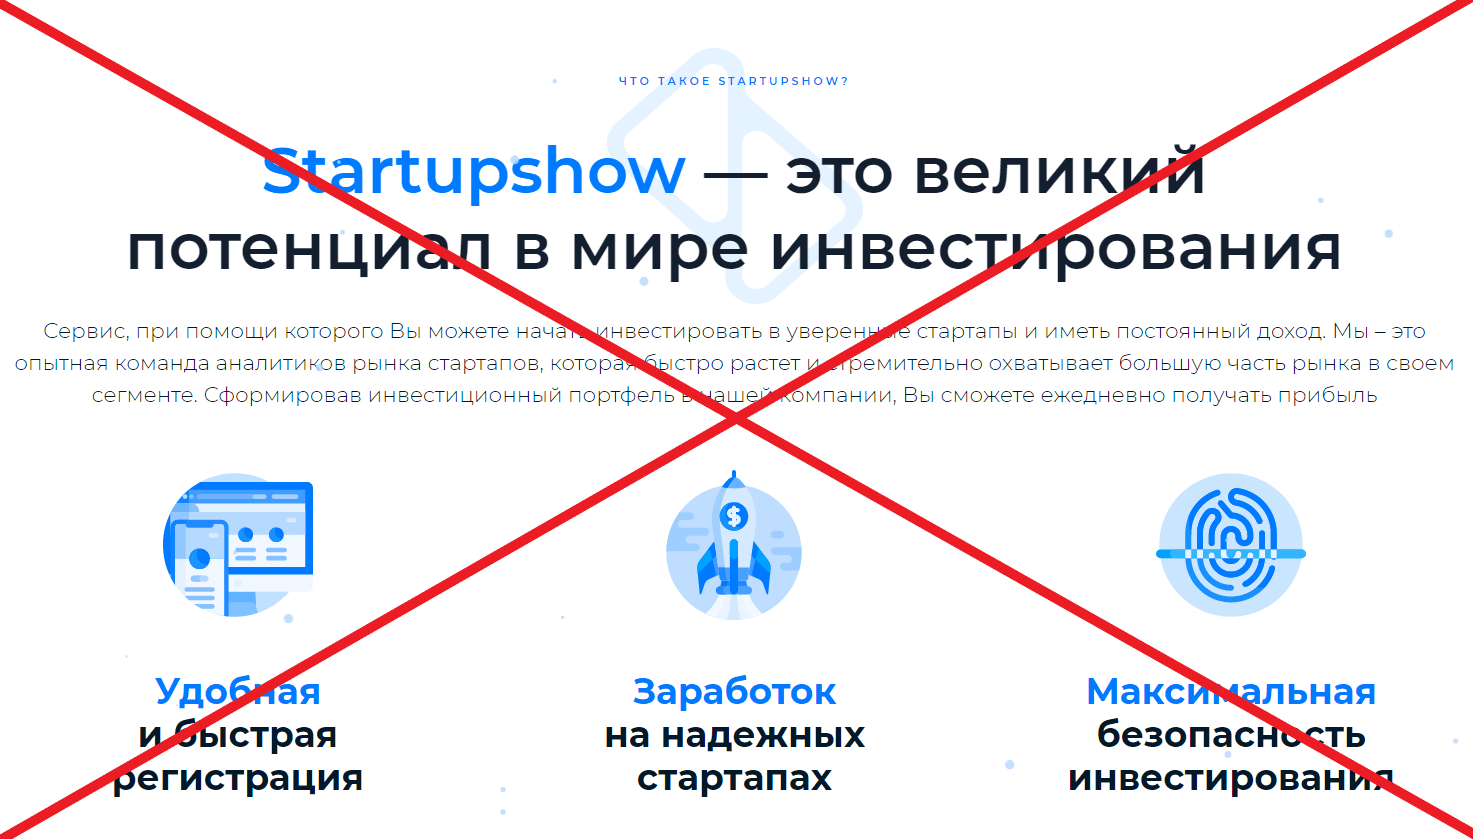 Startupshow - реальные отзывы и репутация startupshow.ltd